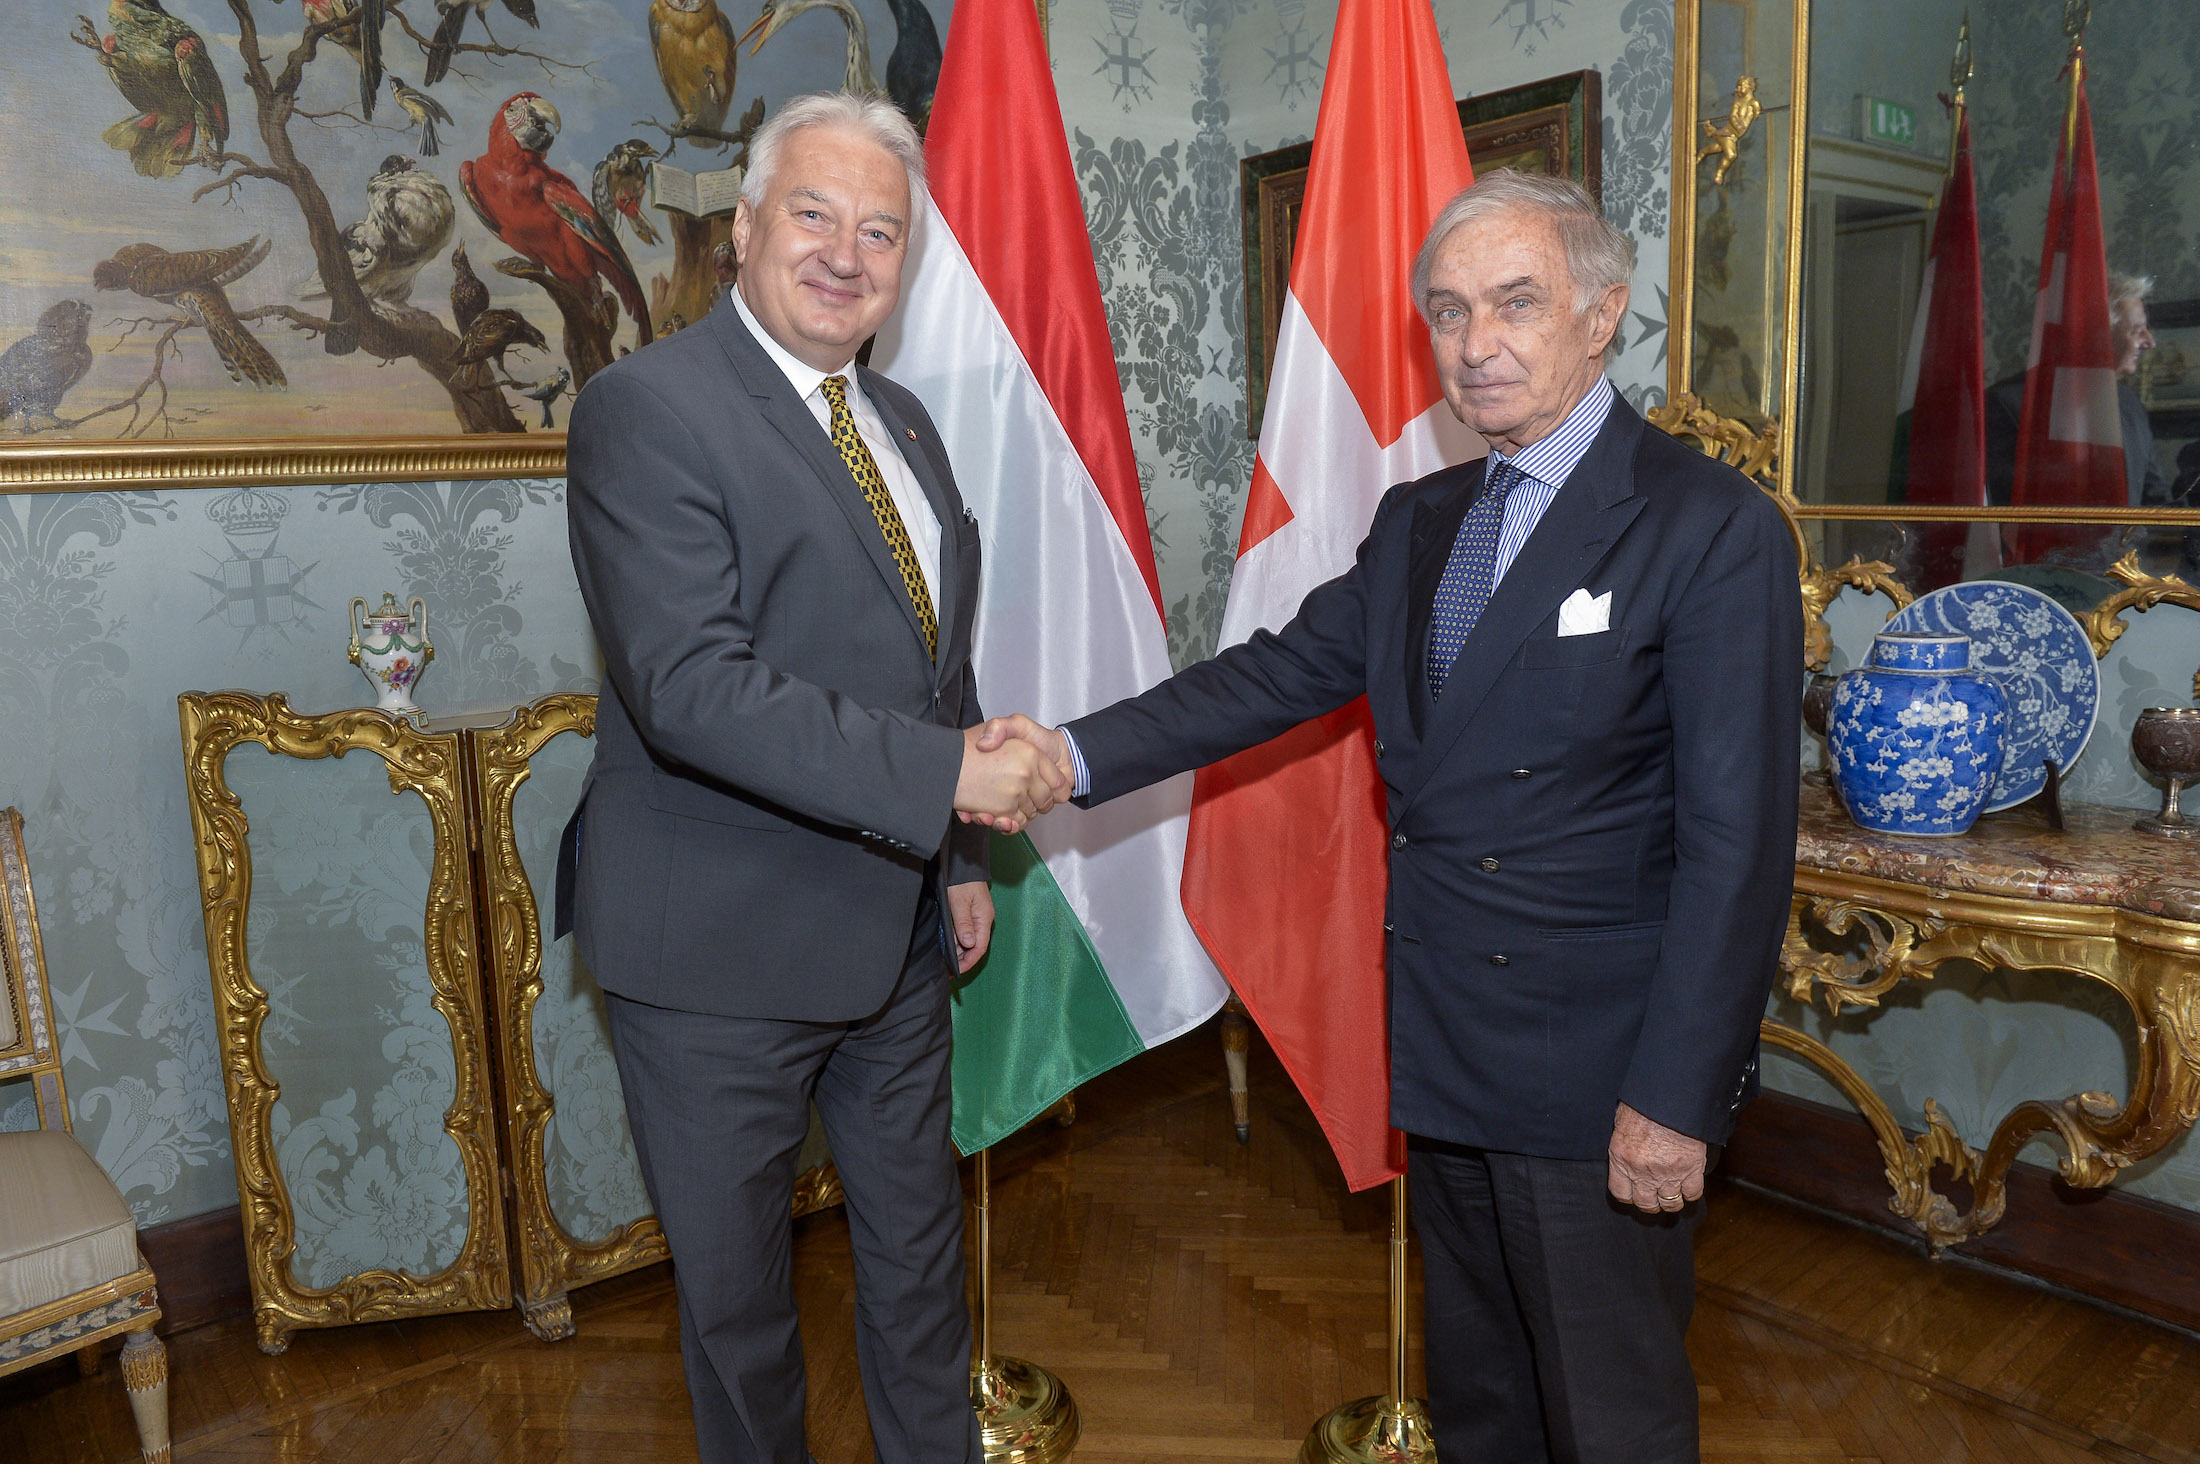 Der Großkanzler empfängt den stellvertretenden Ministerpräsidenten von Ungarn im Magistralpalast